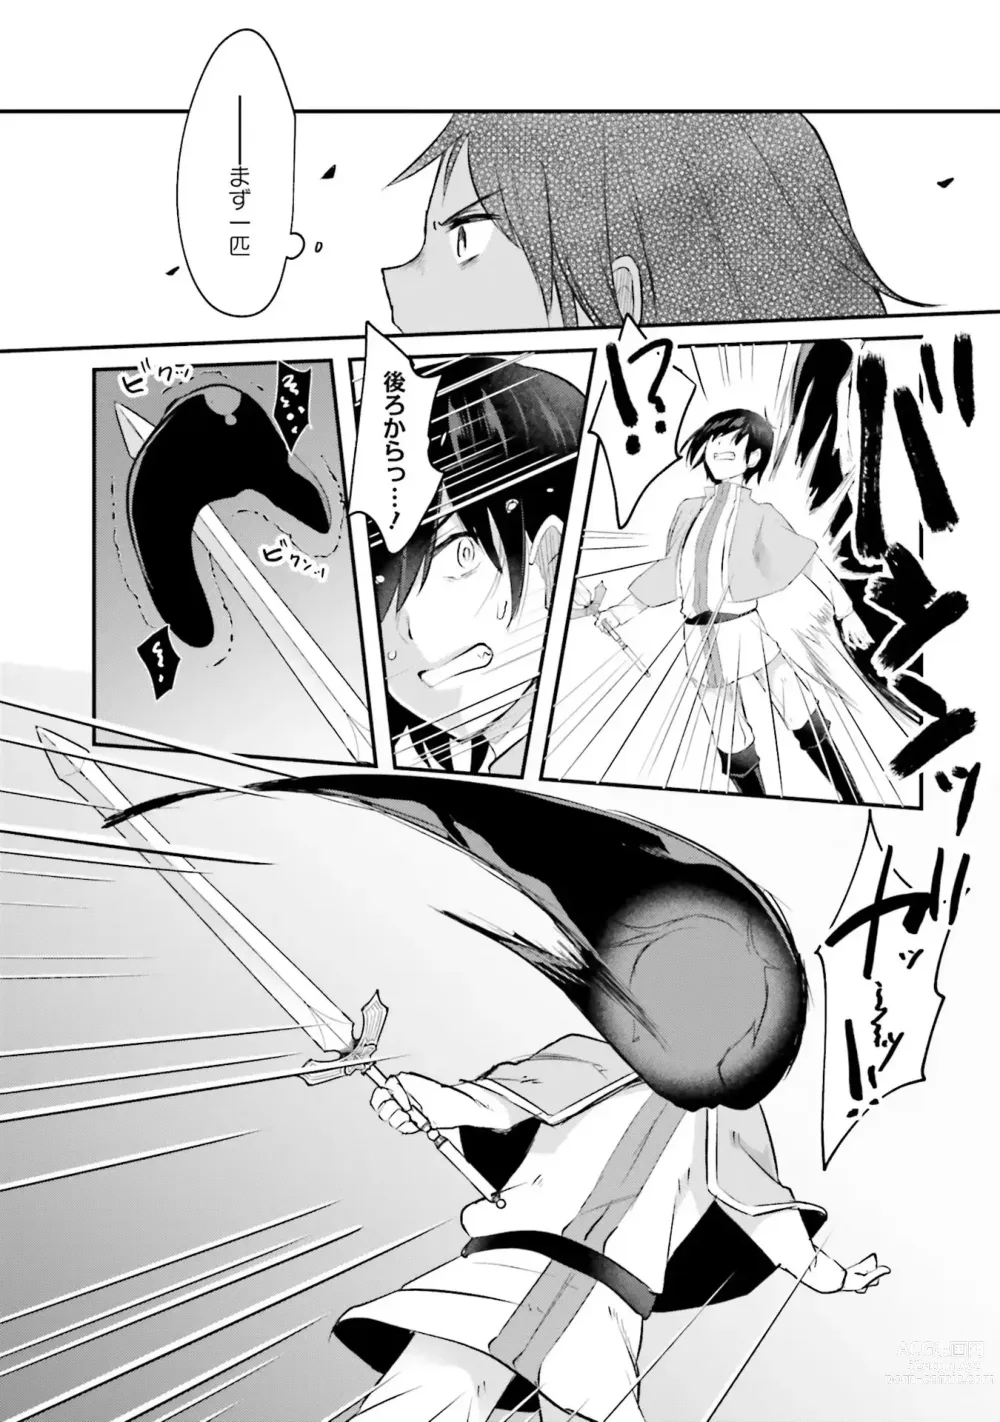 Page 185 of manga Inbi na Doukutsu no Sono Oku de